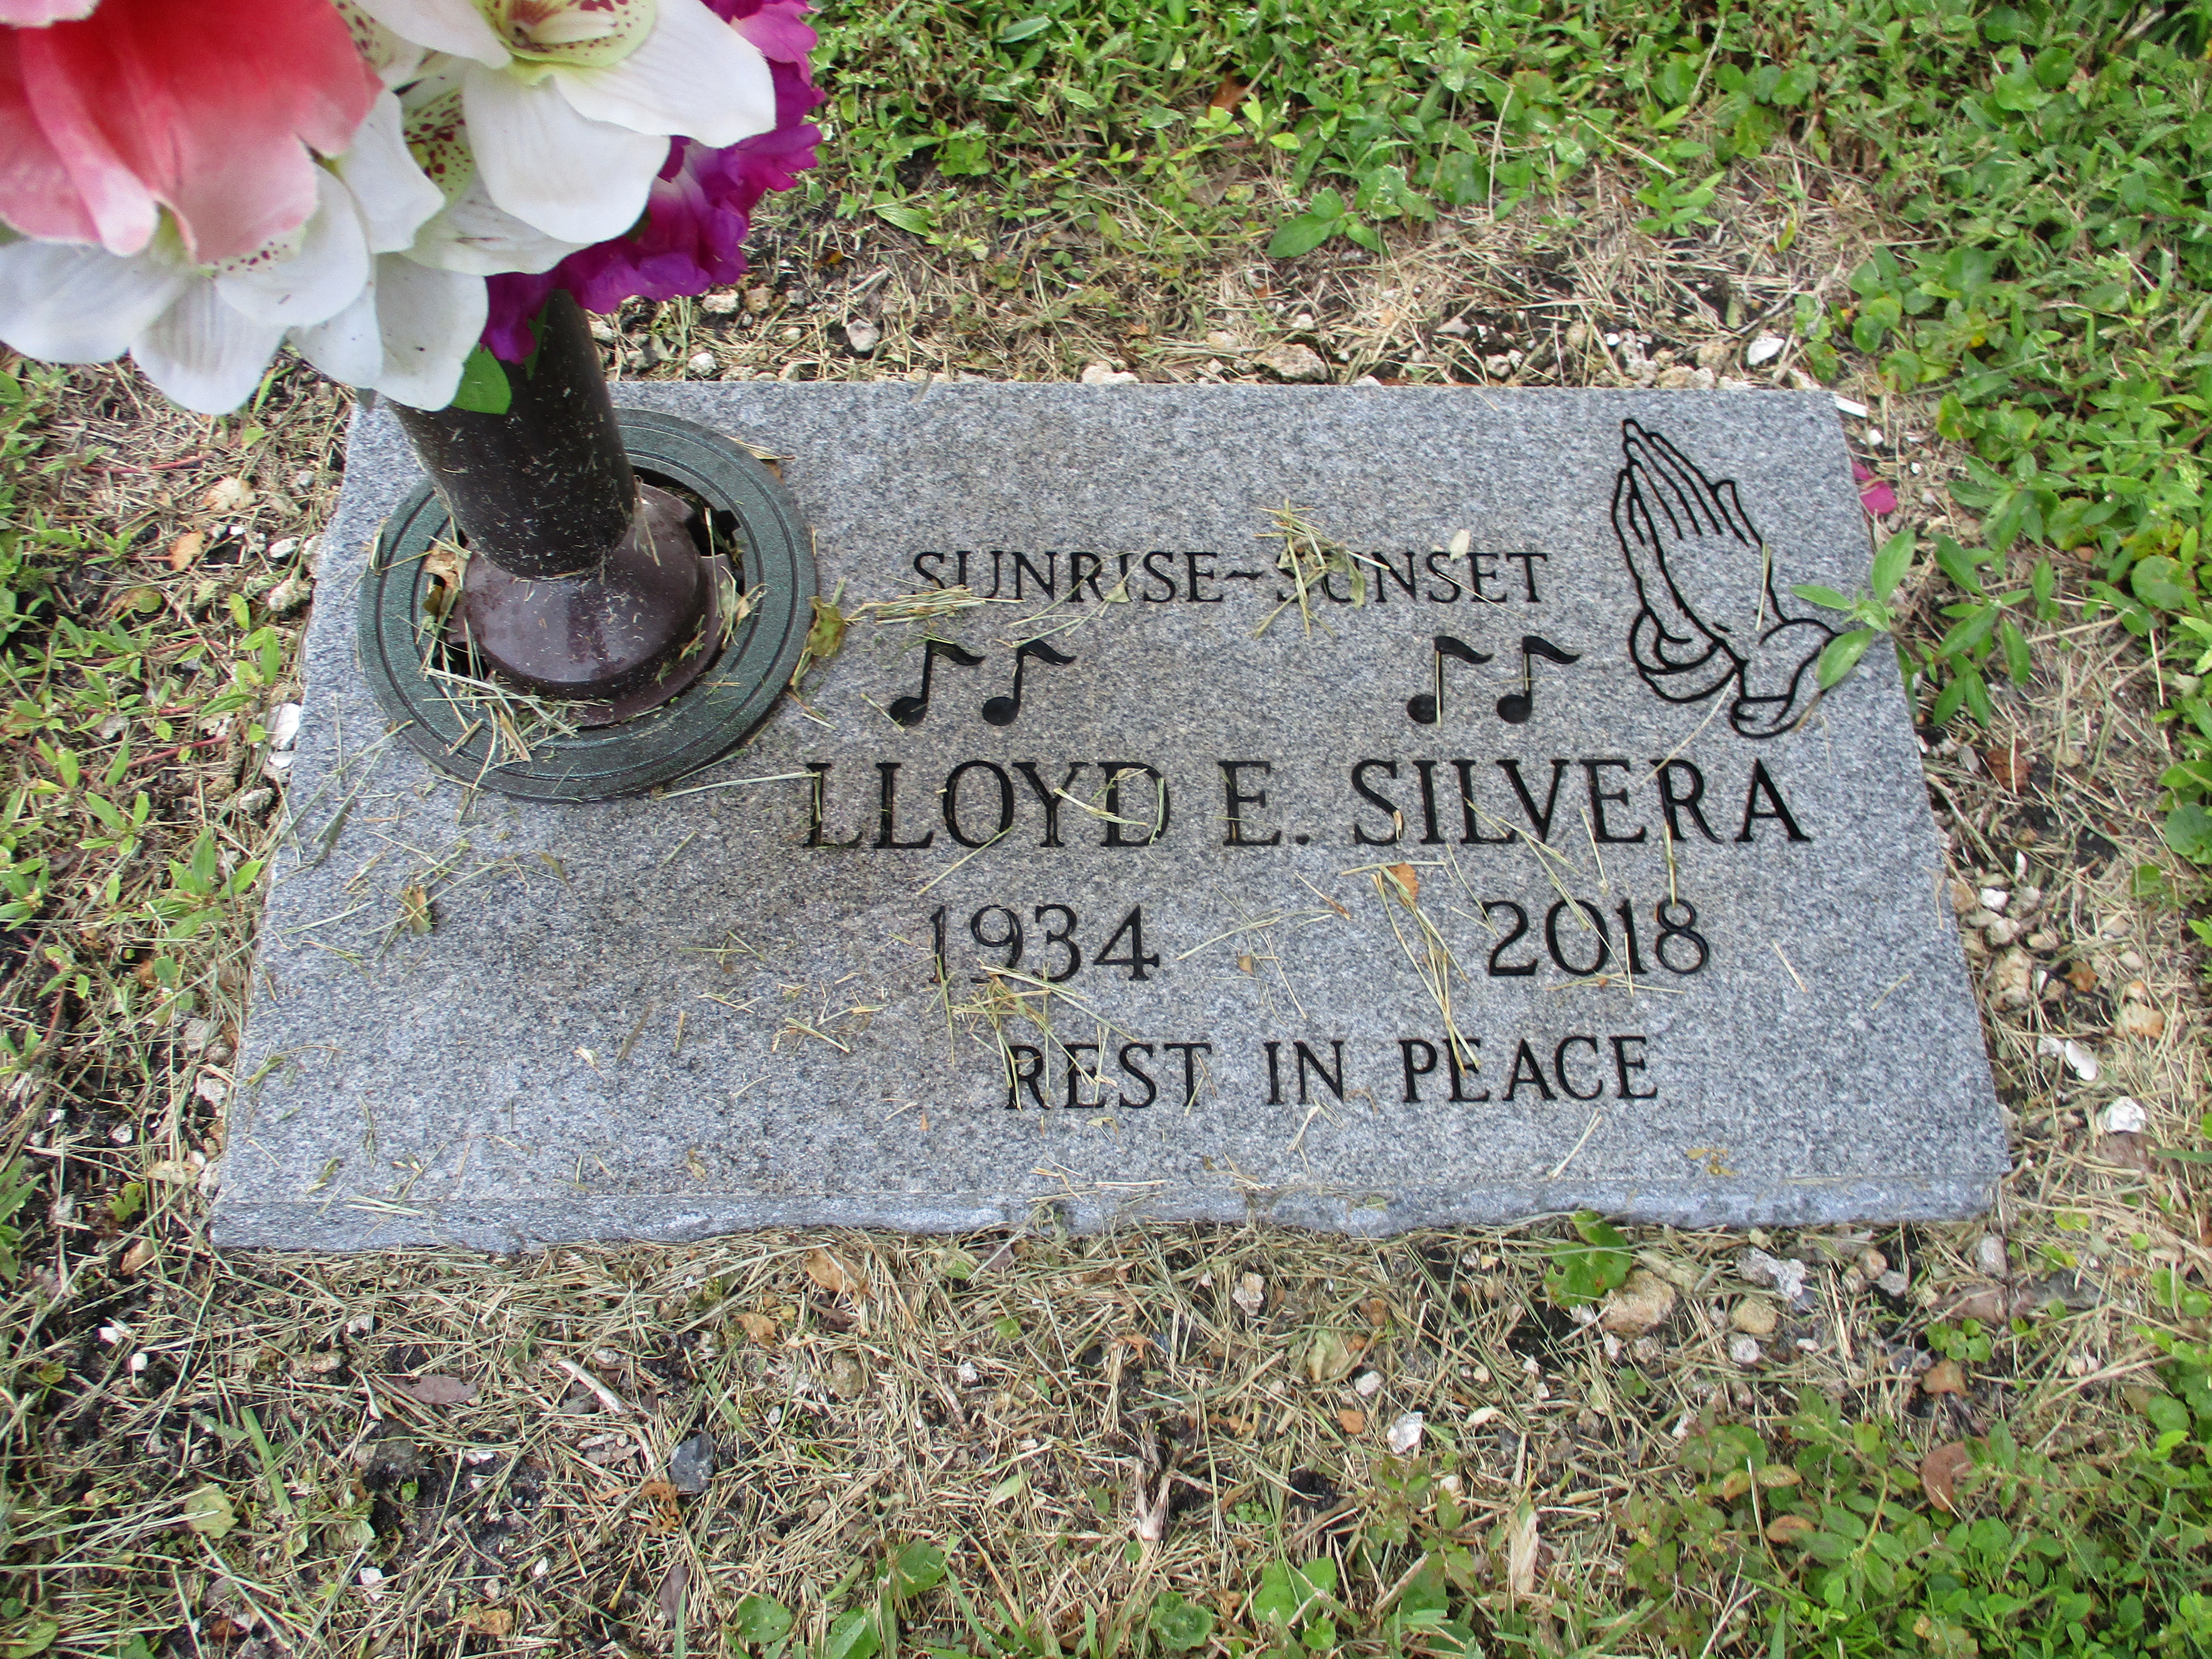 Lloyd E Silvera